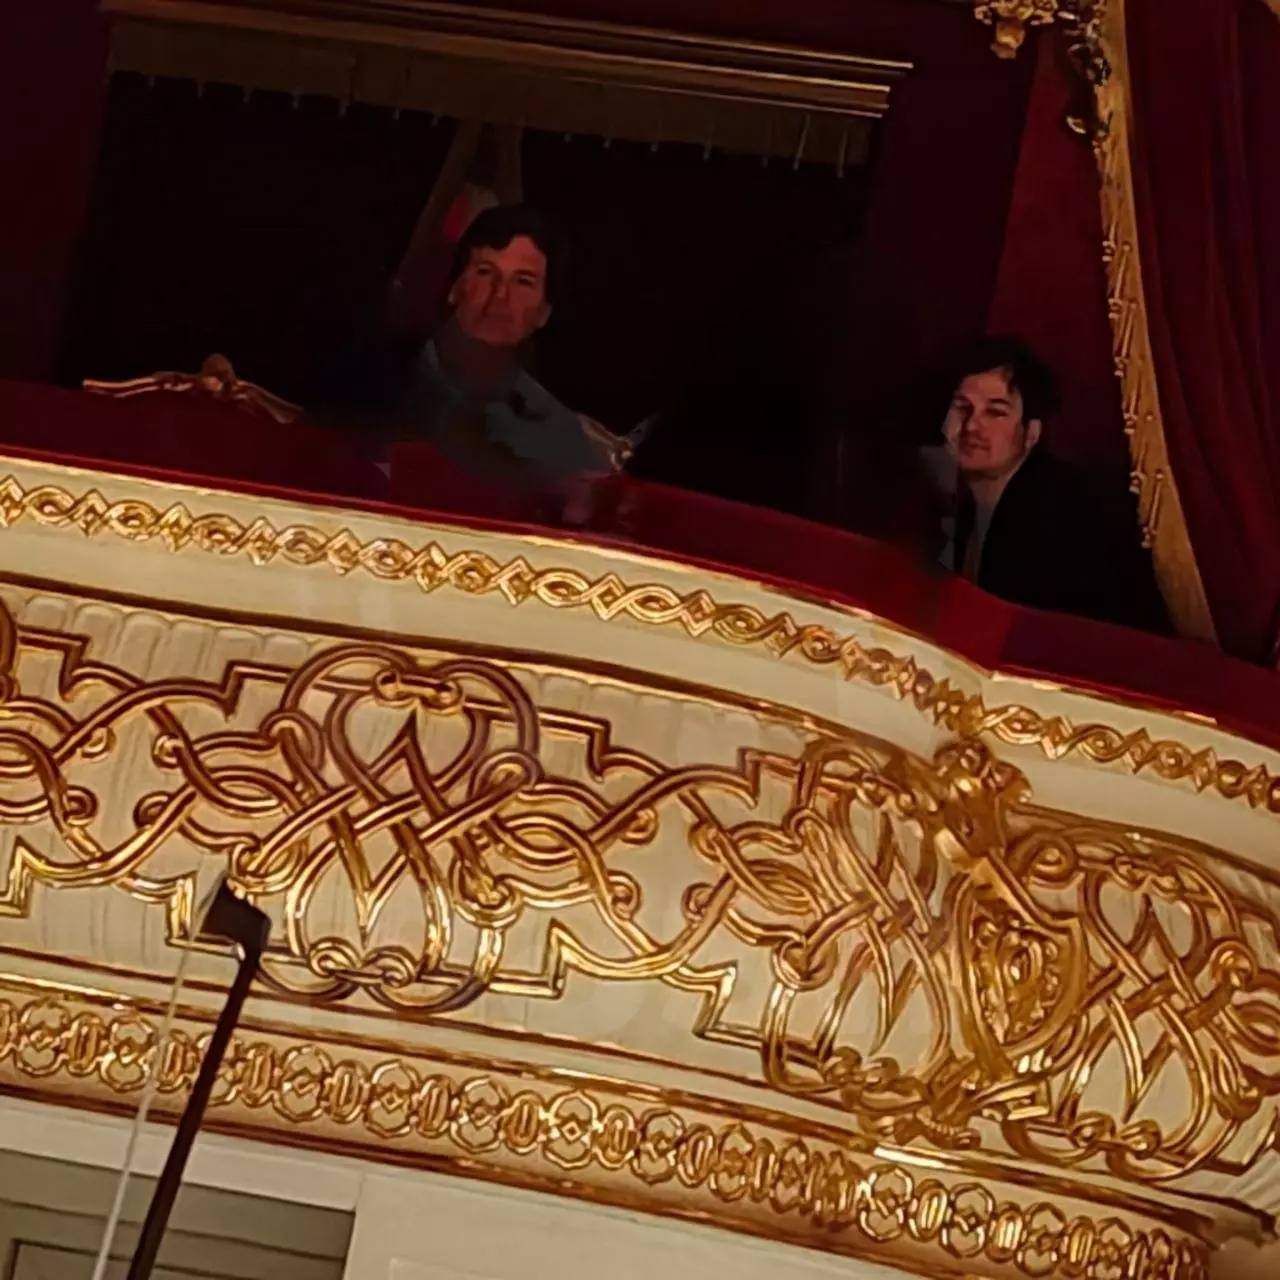 Сегодня журналист смотрел балет «Спартак» в Большом театре.